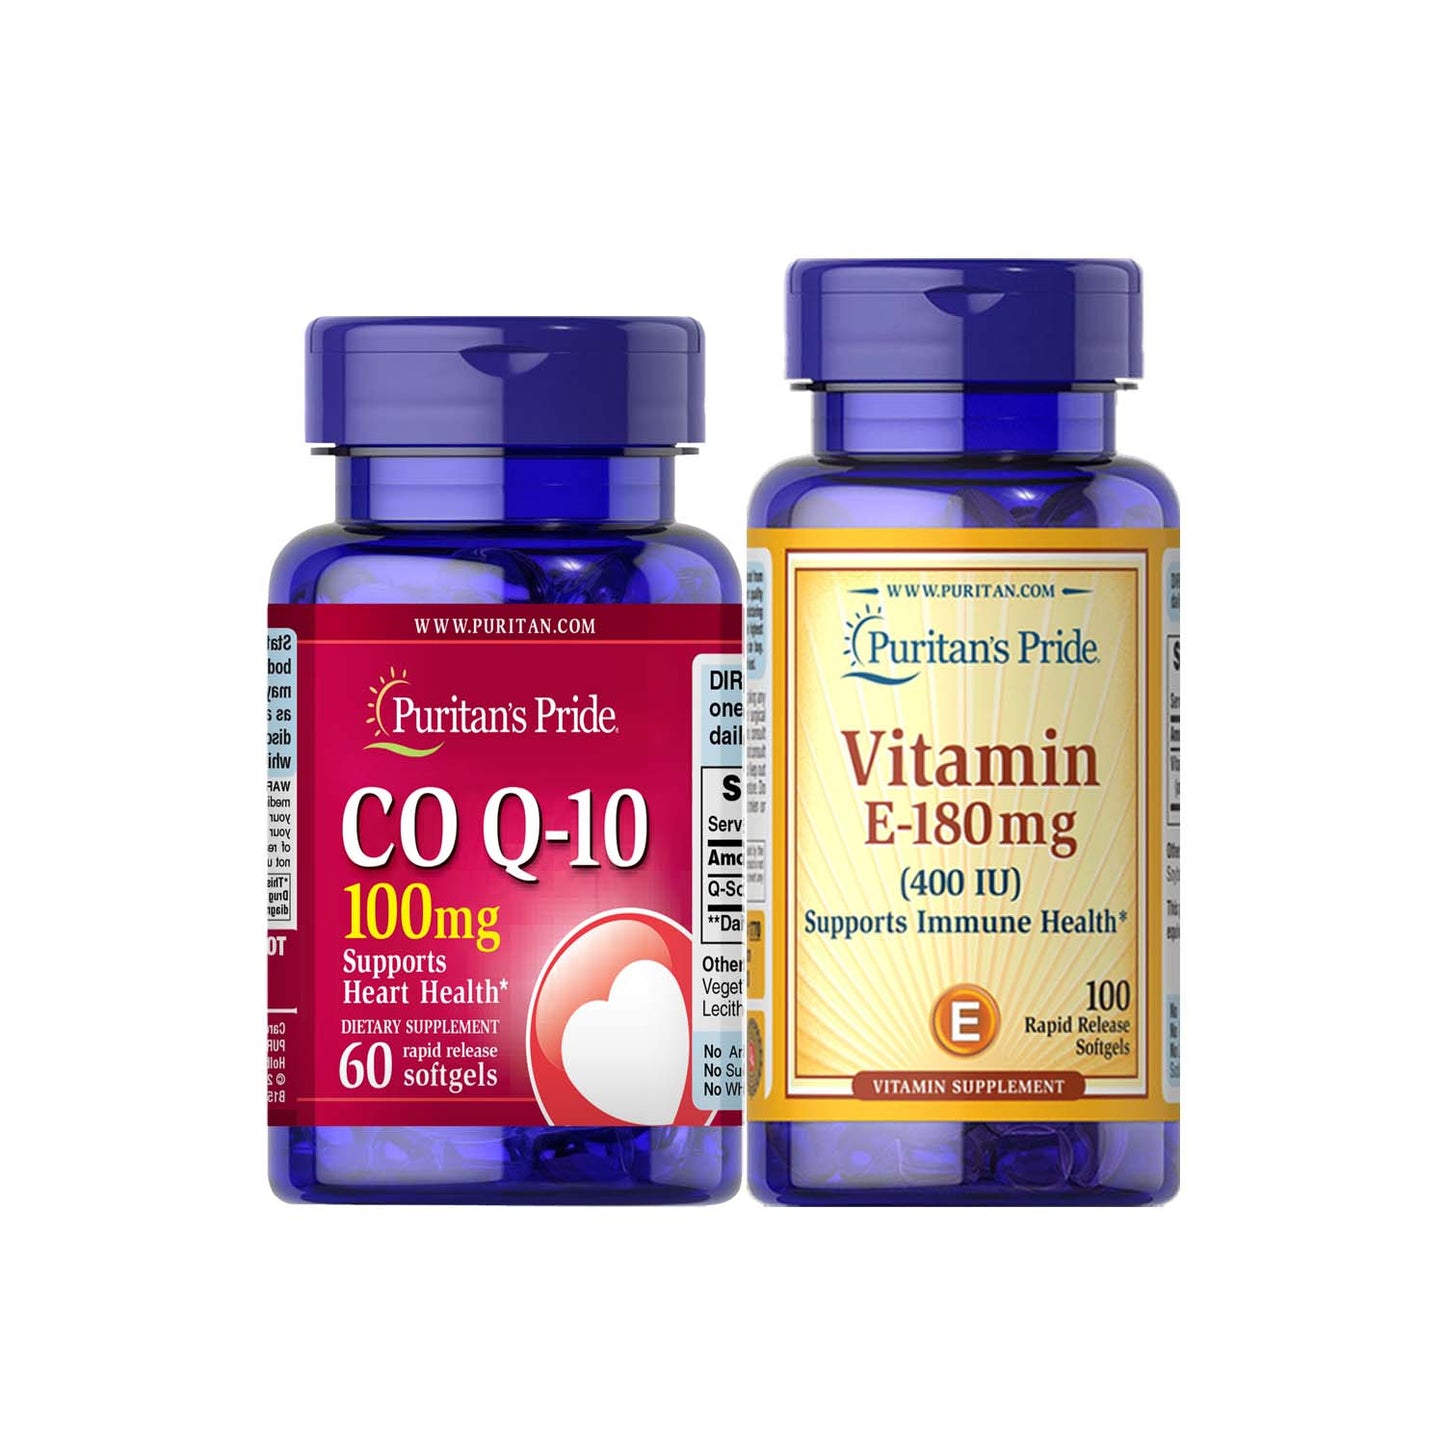 CoQ10 Q-Sorb 100mg 60 softgels + Vitamin E Synthetic 400iu Puritan's Pride PCOS